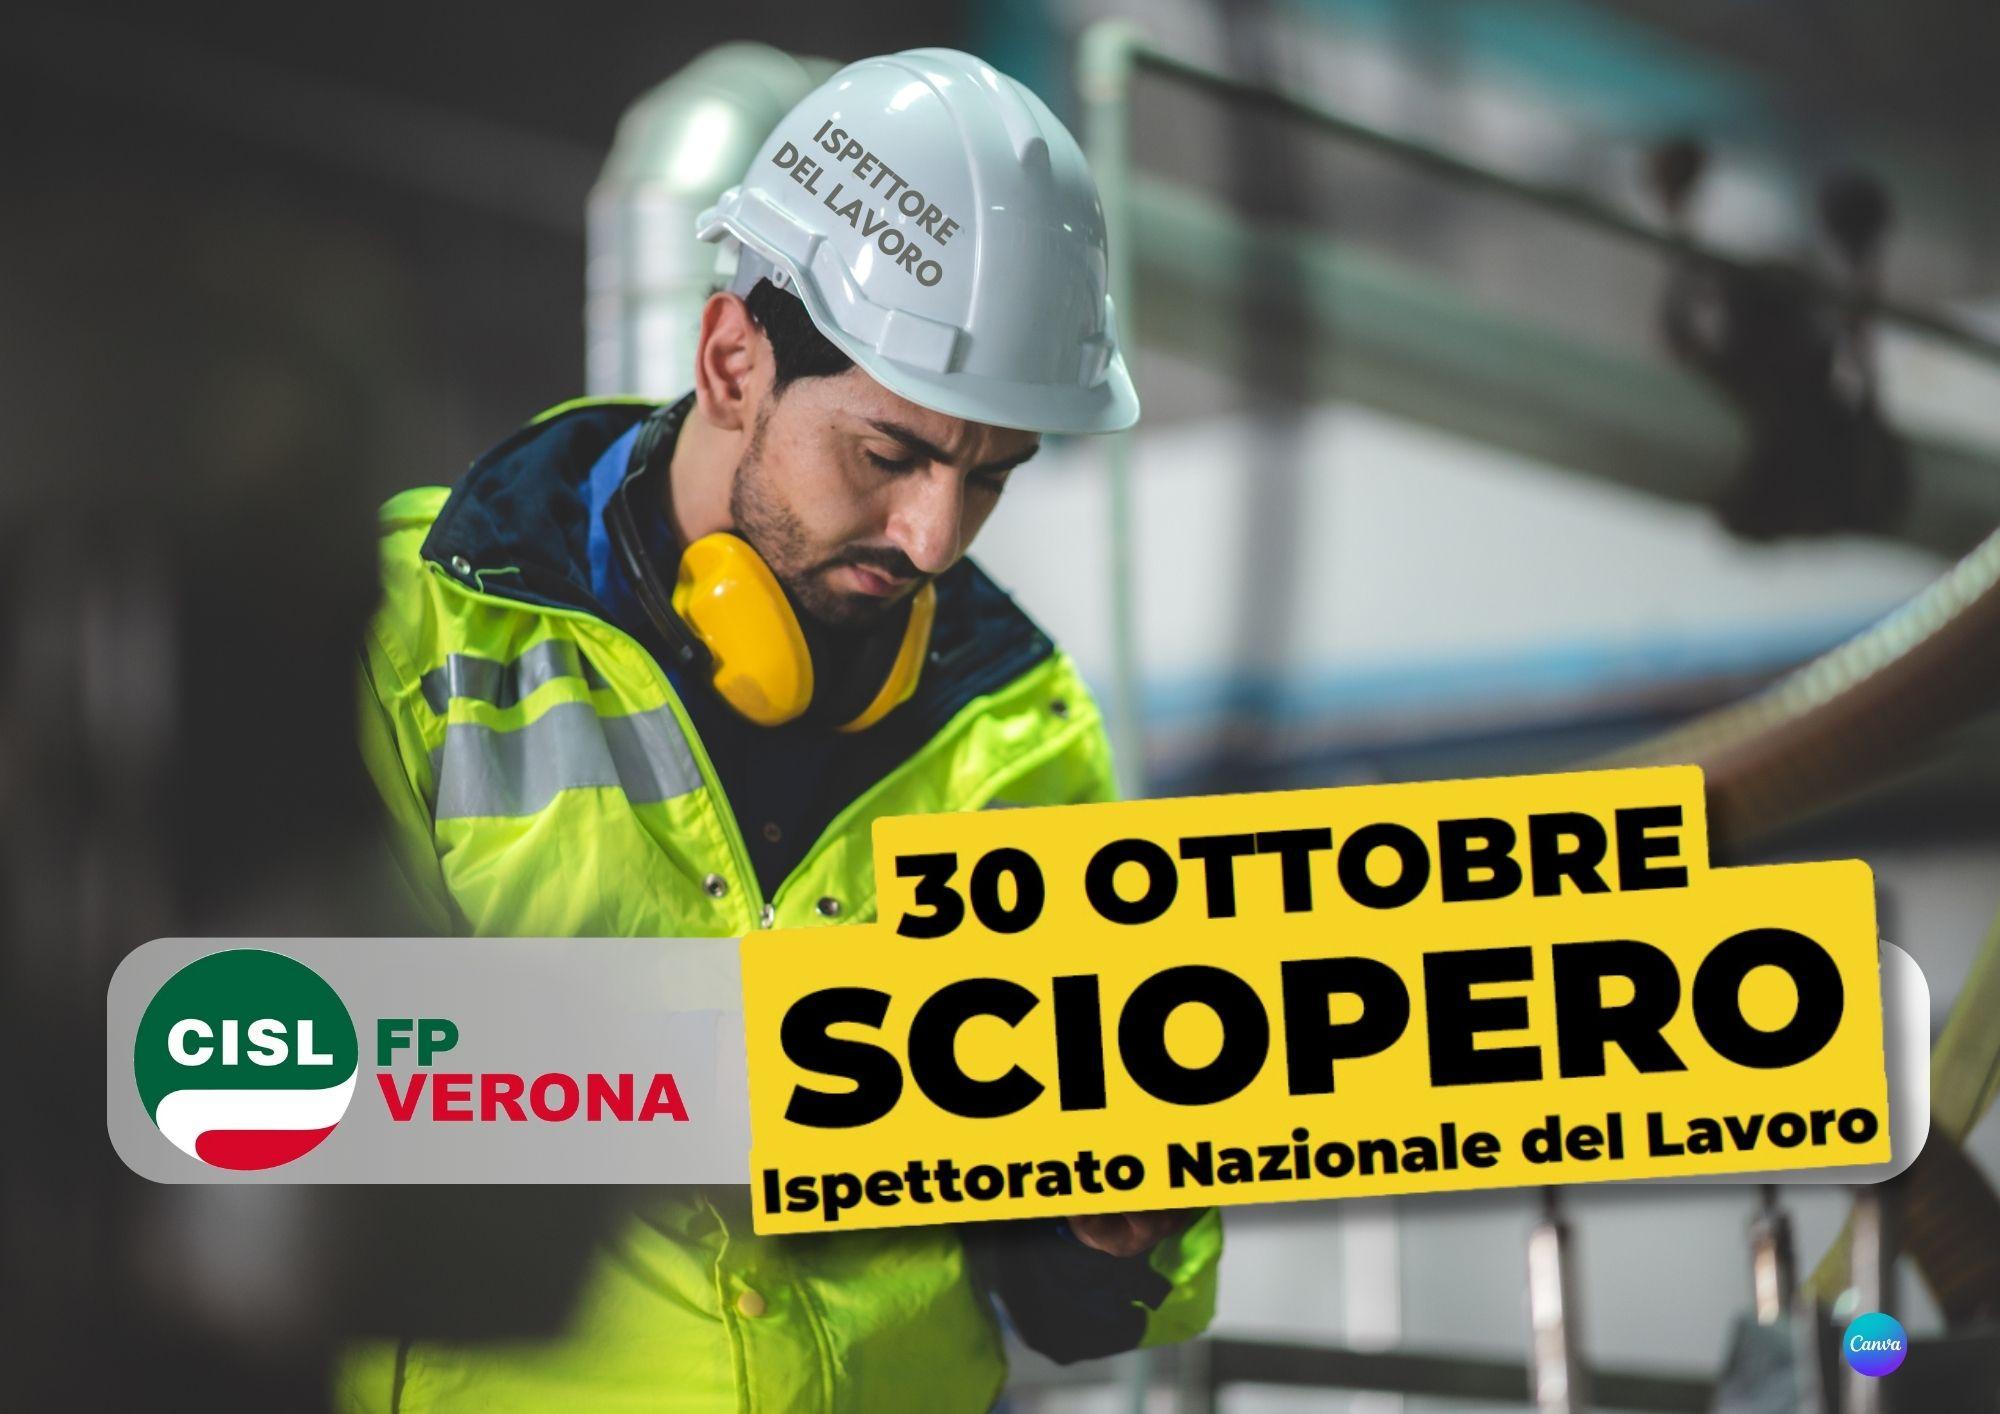 CISL FP Verona. 30 ottobre sciopero Ispettorato Nazionale del Lavoro. La situazione. Le richieste